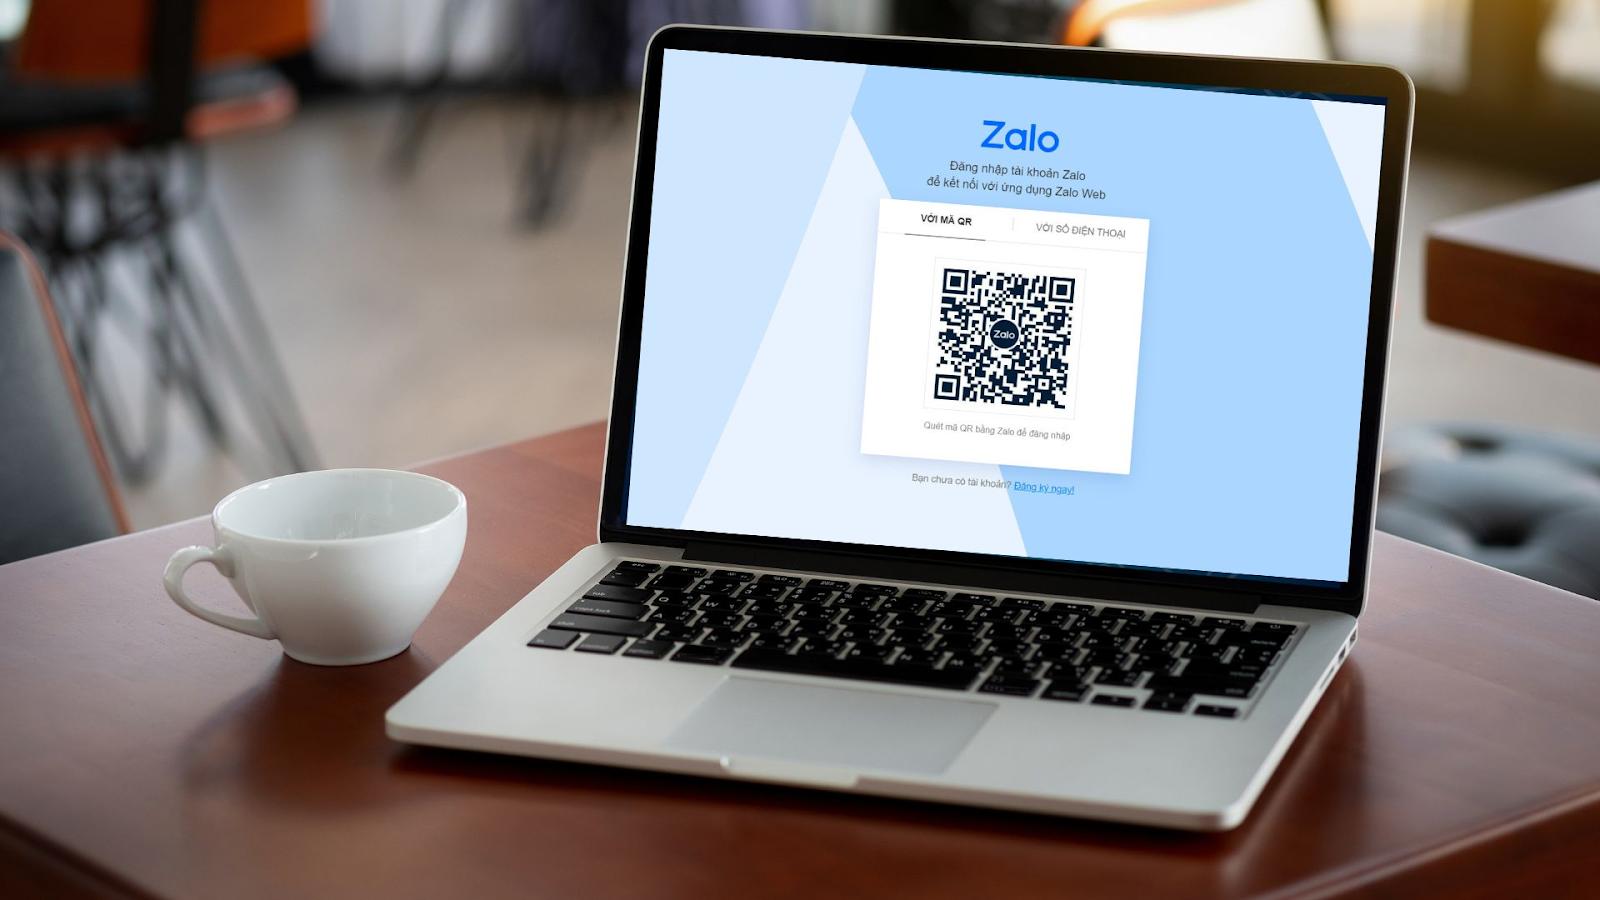 Bí quyết đăng nhập Zalo bằng mã QR trên điện thoại, không cần mã xác nhận